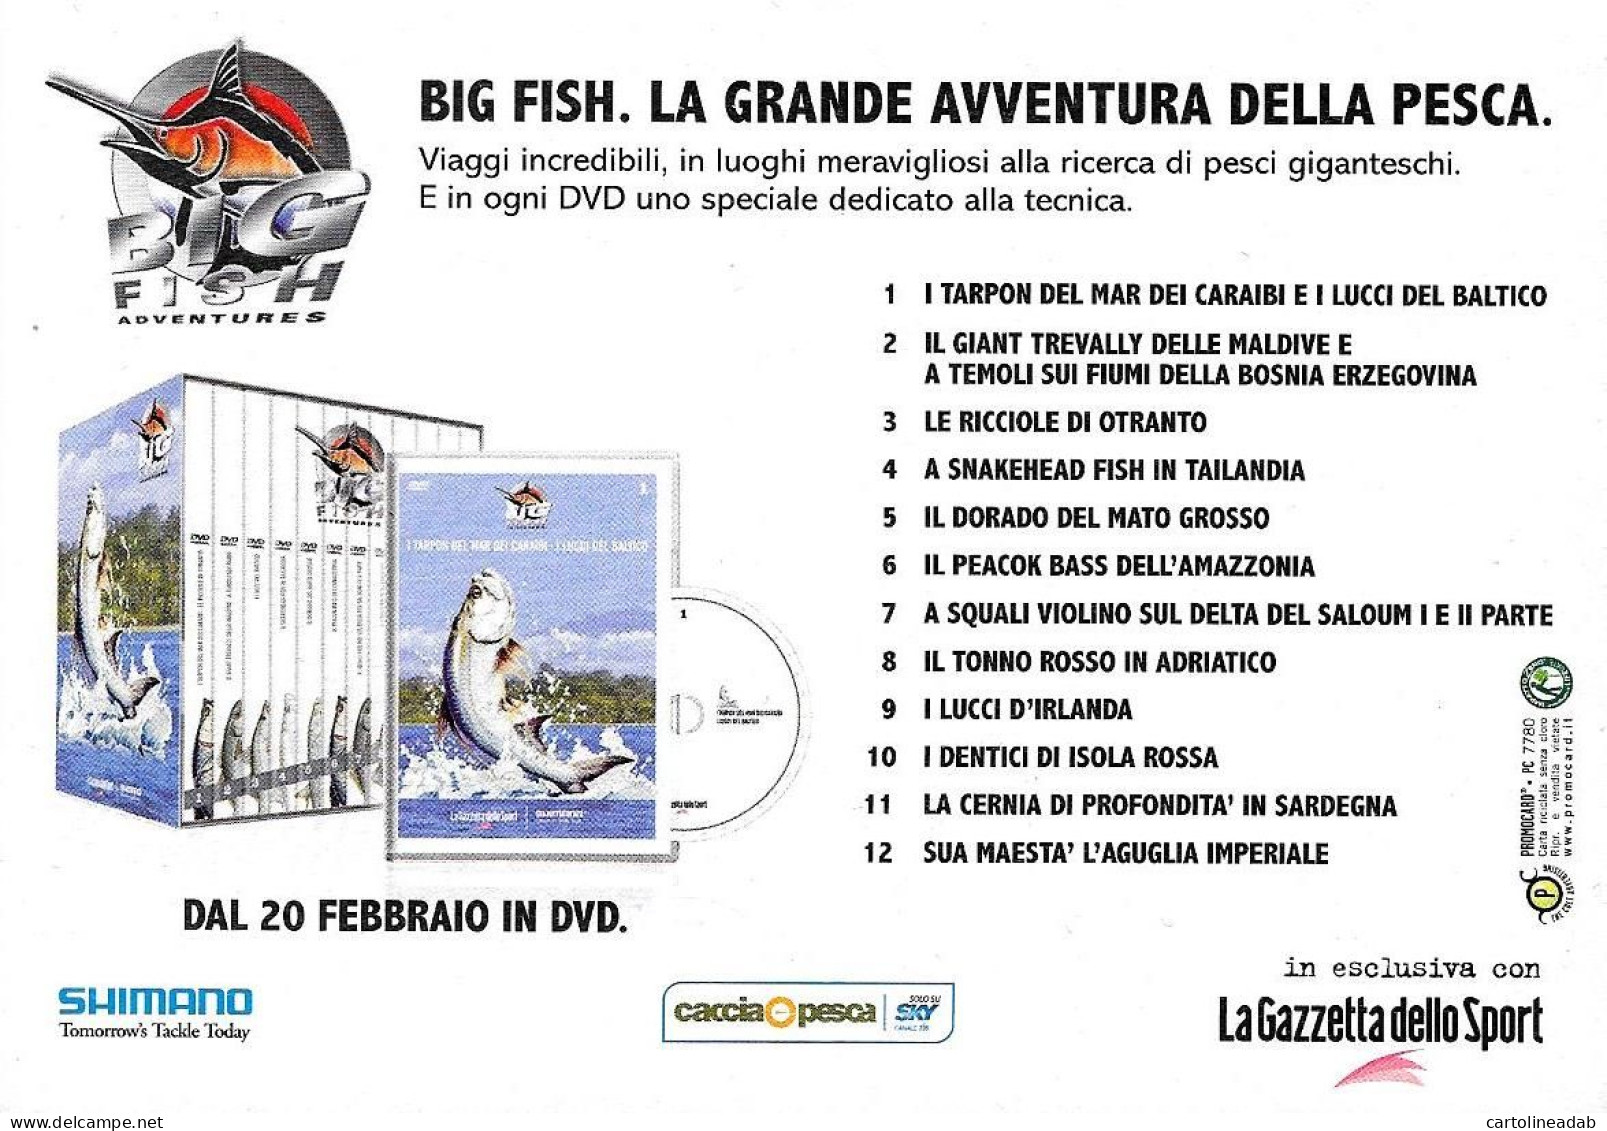 [MD9447] CPM - BIG FISH LA GRANDE AVVENTURA DELLA PESCA DVD - PROMOCARD 7780 - PERFETTA - Non Viaggiata - Werbepostkarten